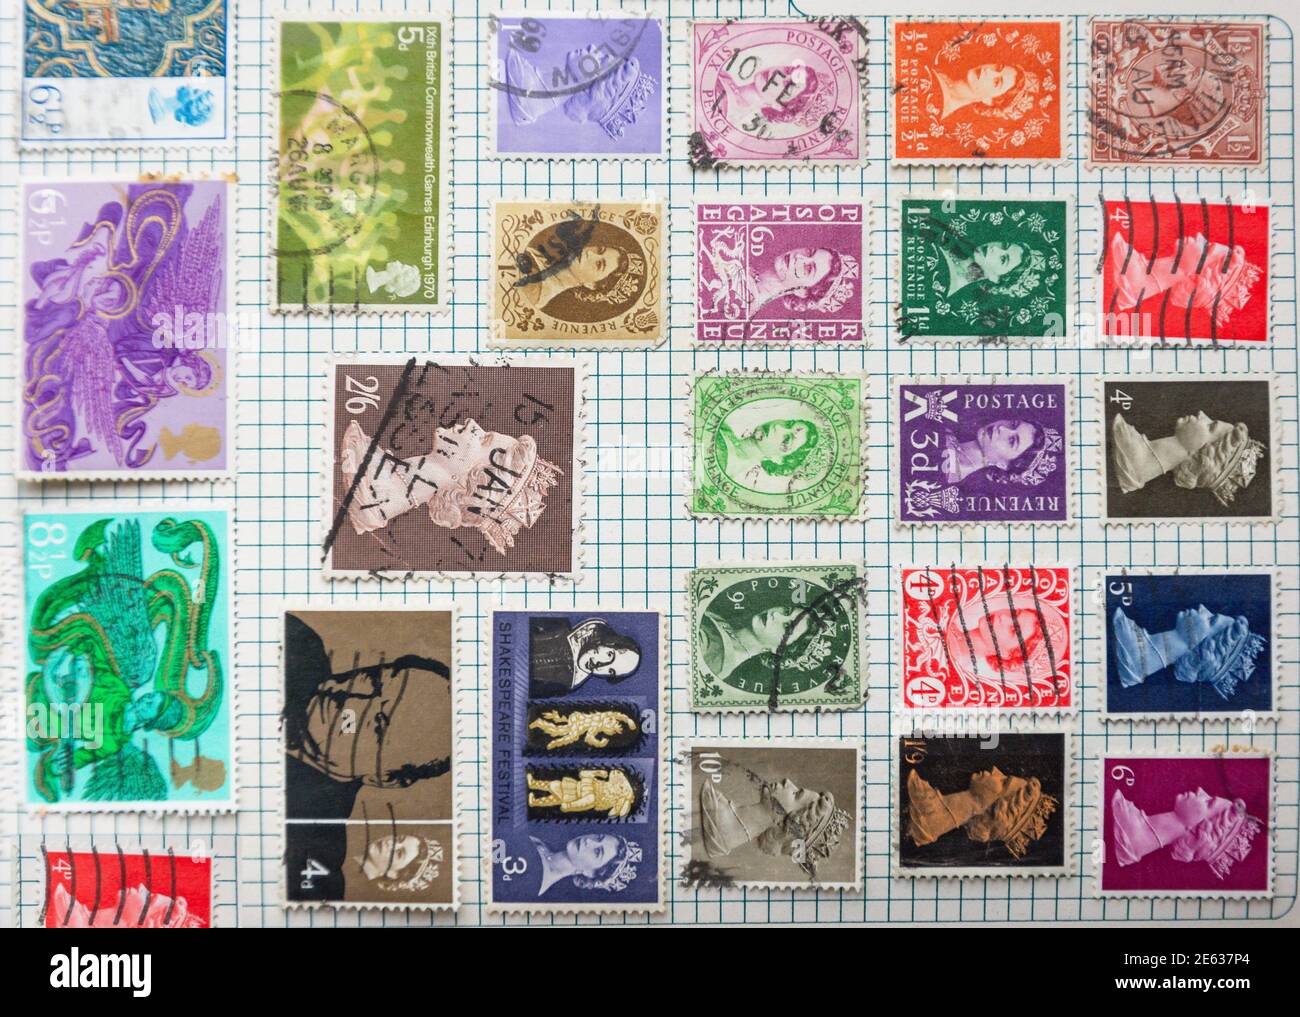 Collection de timbres de Grande-Bretagne dans l'album, Grand Londres, Angleterre, Royaume-Uni Banque D'Images